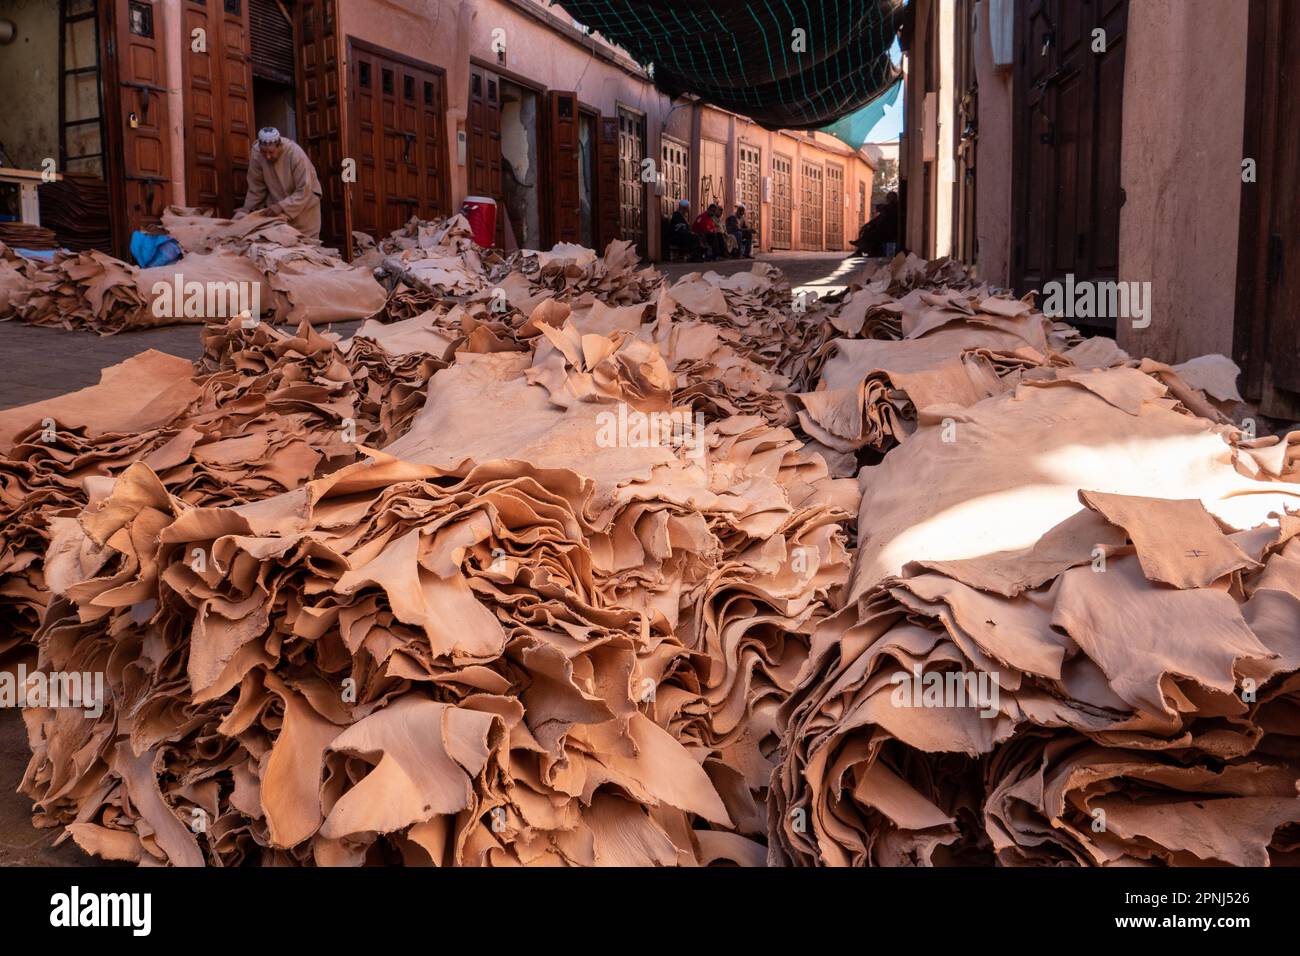 Stapel von Gegerbtem Leder im Souk von Marrakesch Foto Stock